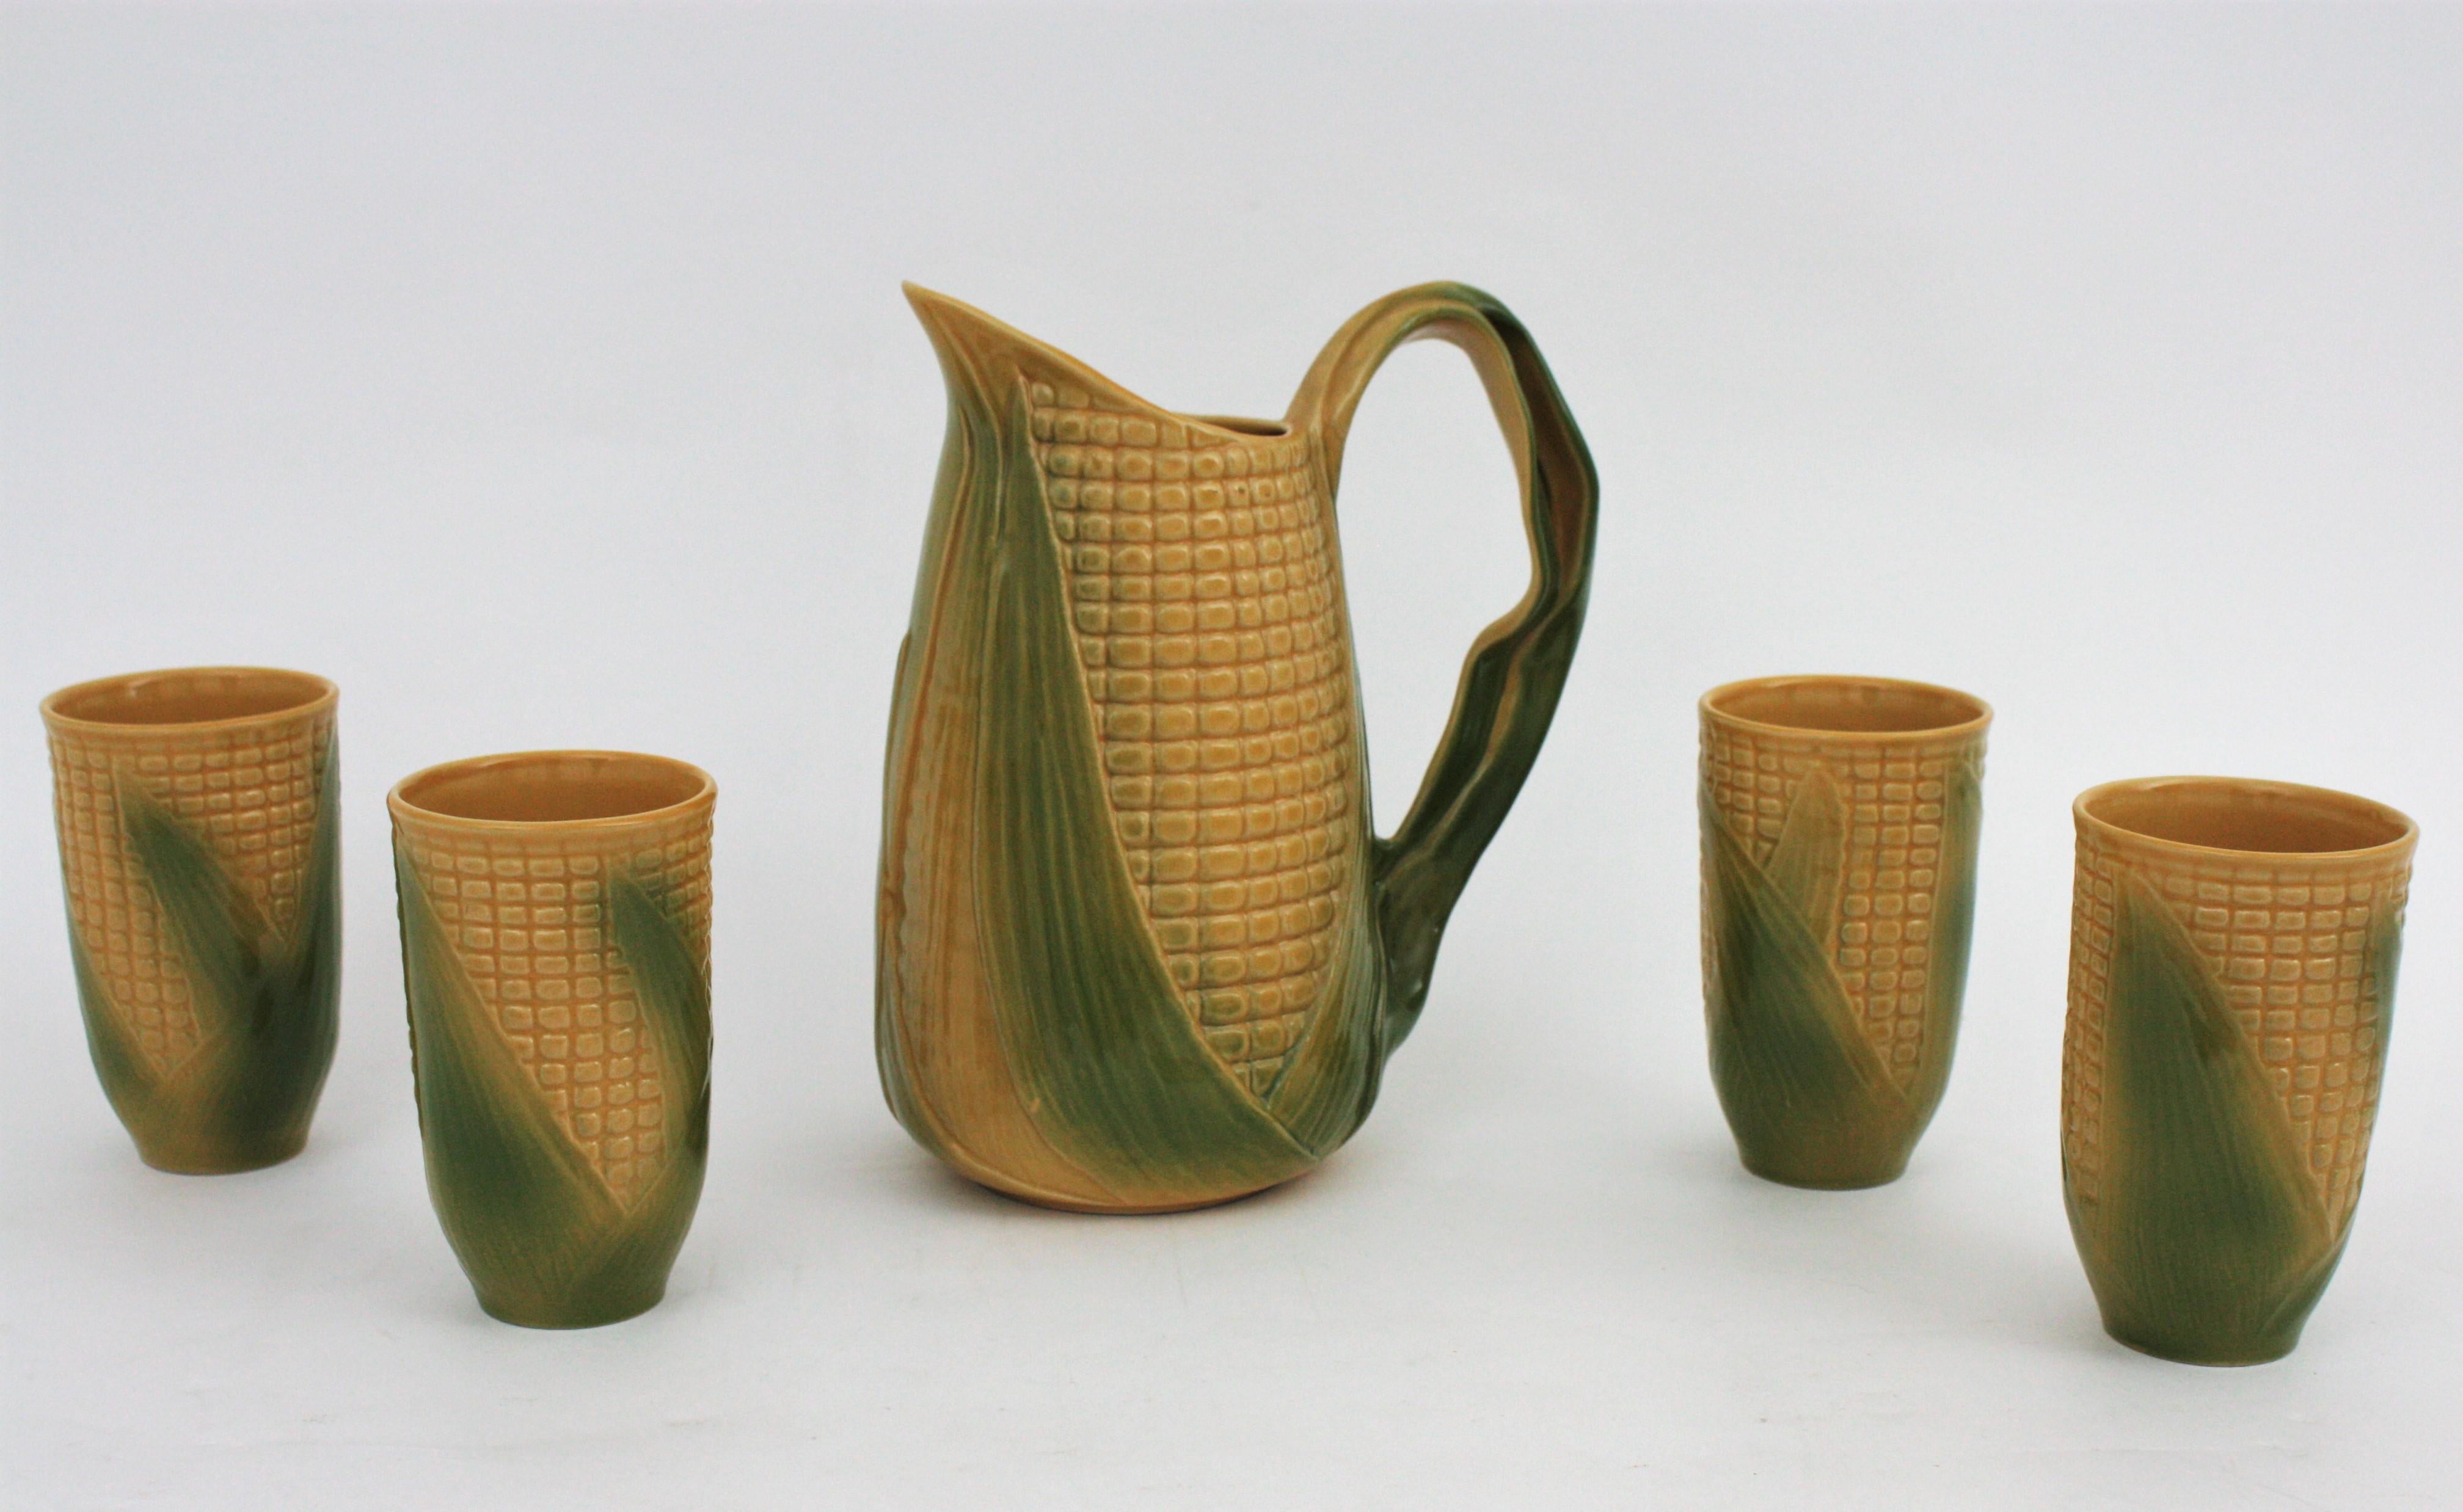 Auffälliges Majolika-Set aus glasierter Keramik mit Maiskolben und vier Bechern. Frankreich, 1960er Jahre.
Das Set besteht aus einem großen Keramikkrug in Form eines Maiskolbens und vier Keramikgläsern mit demselben Design.
Dieses Set wird ein